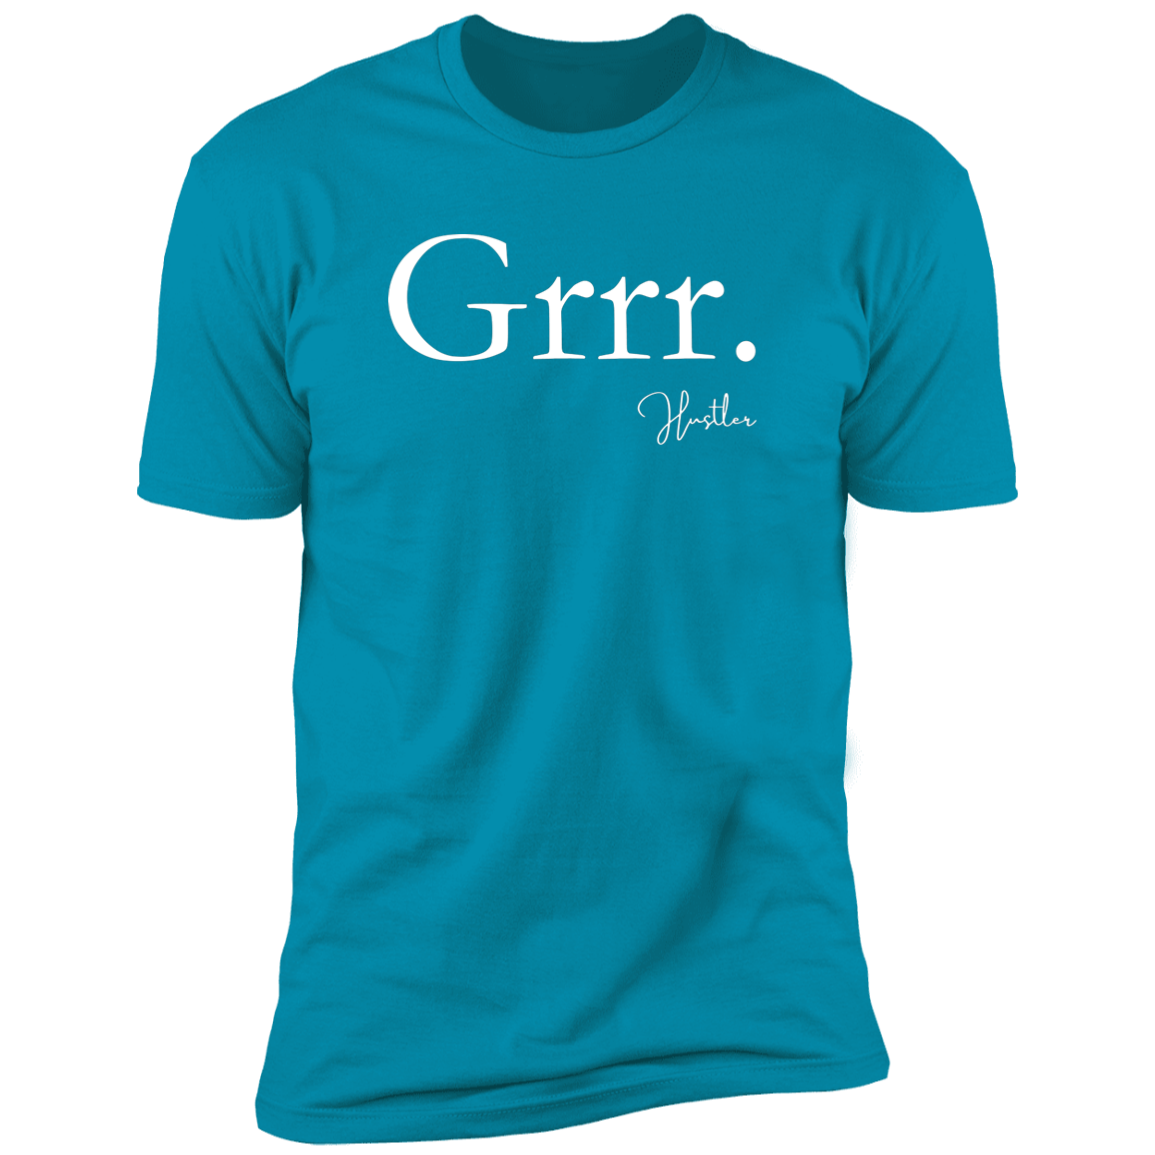 Grrr T-Shirt